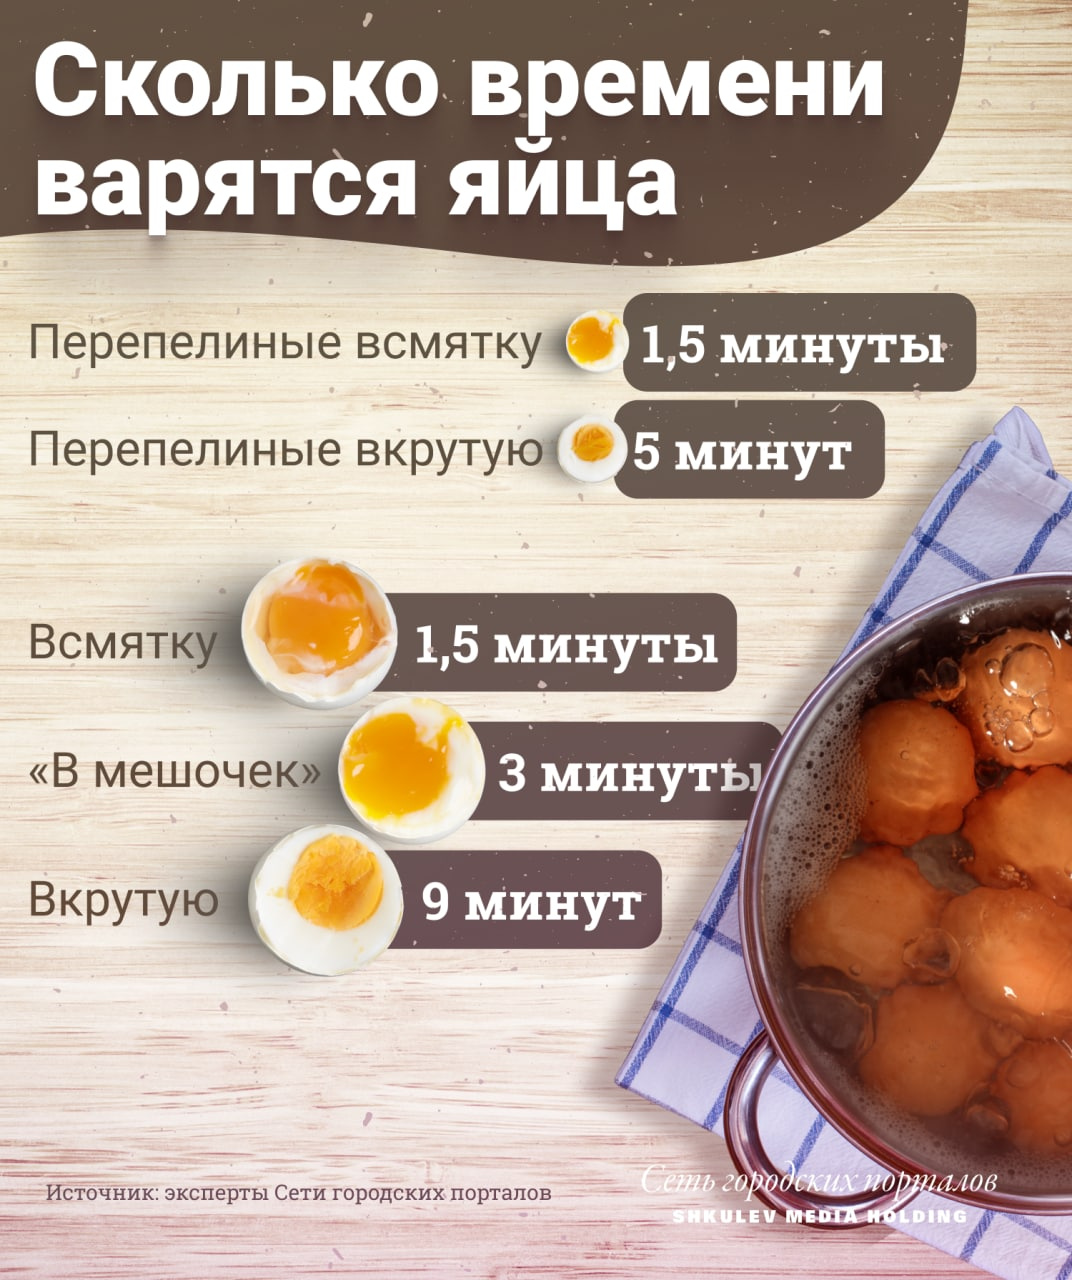 Засекайте время, чтобы приготовить яйца правильно